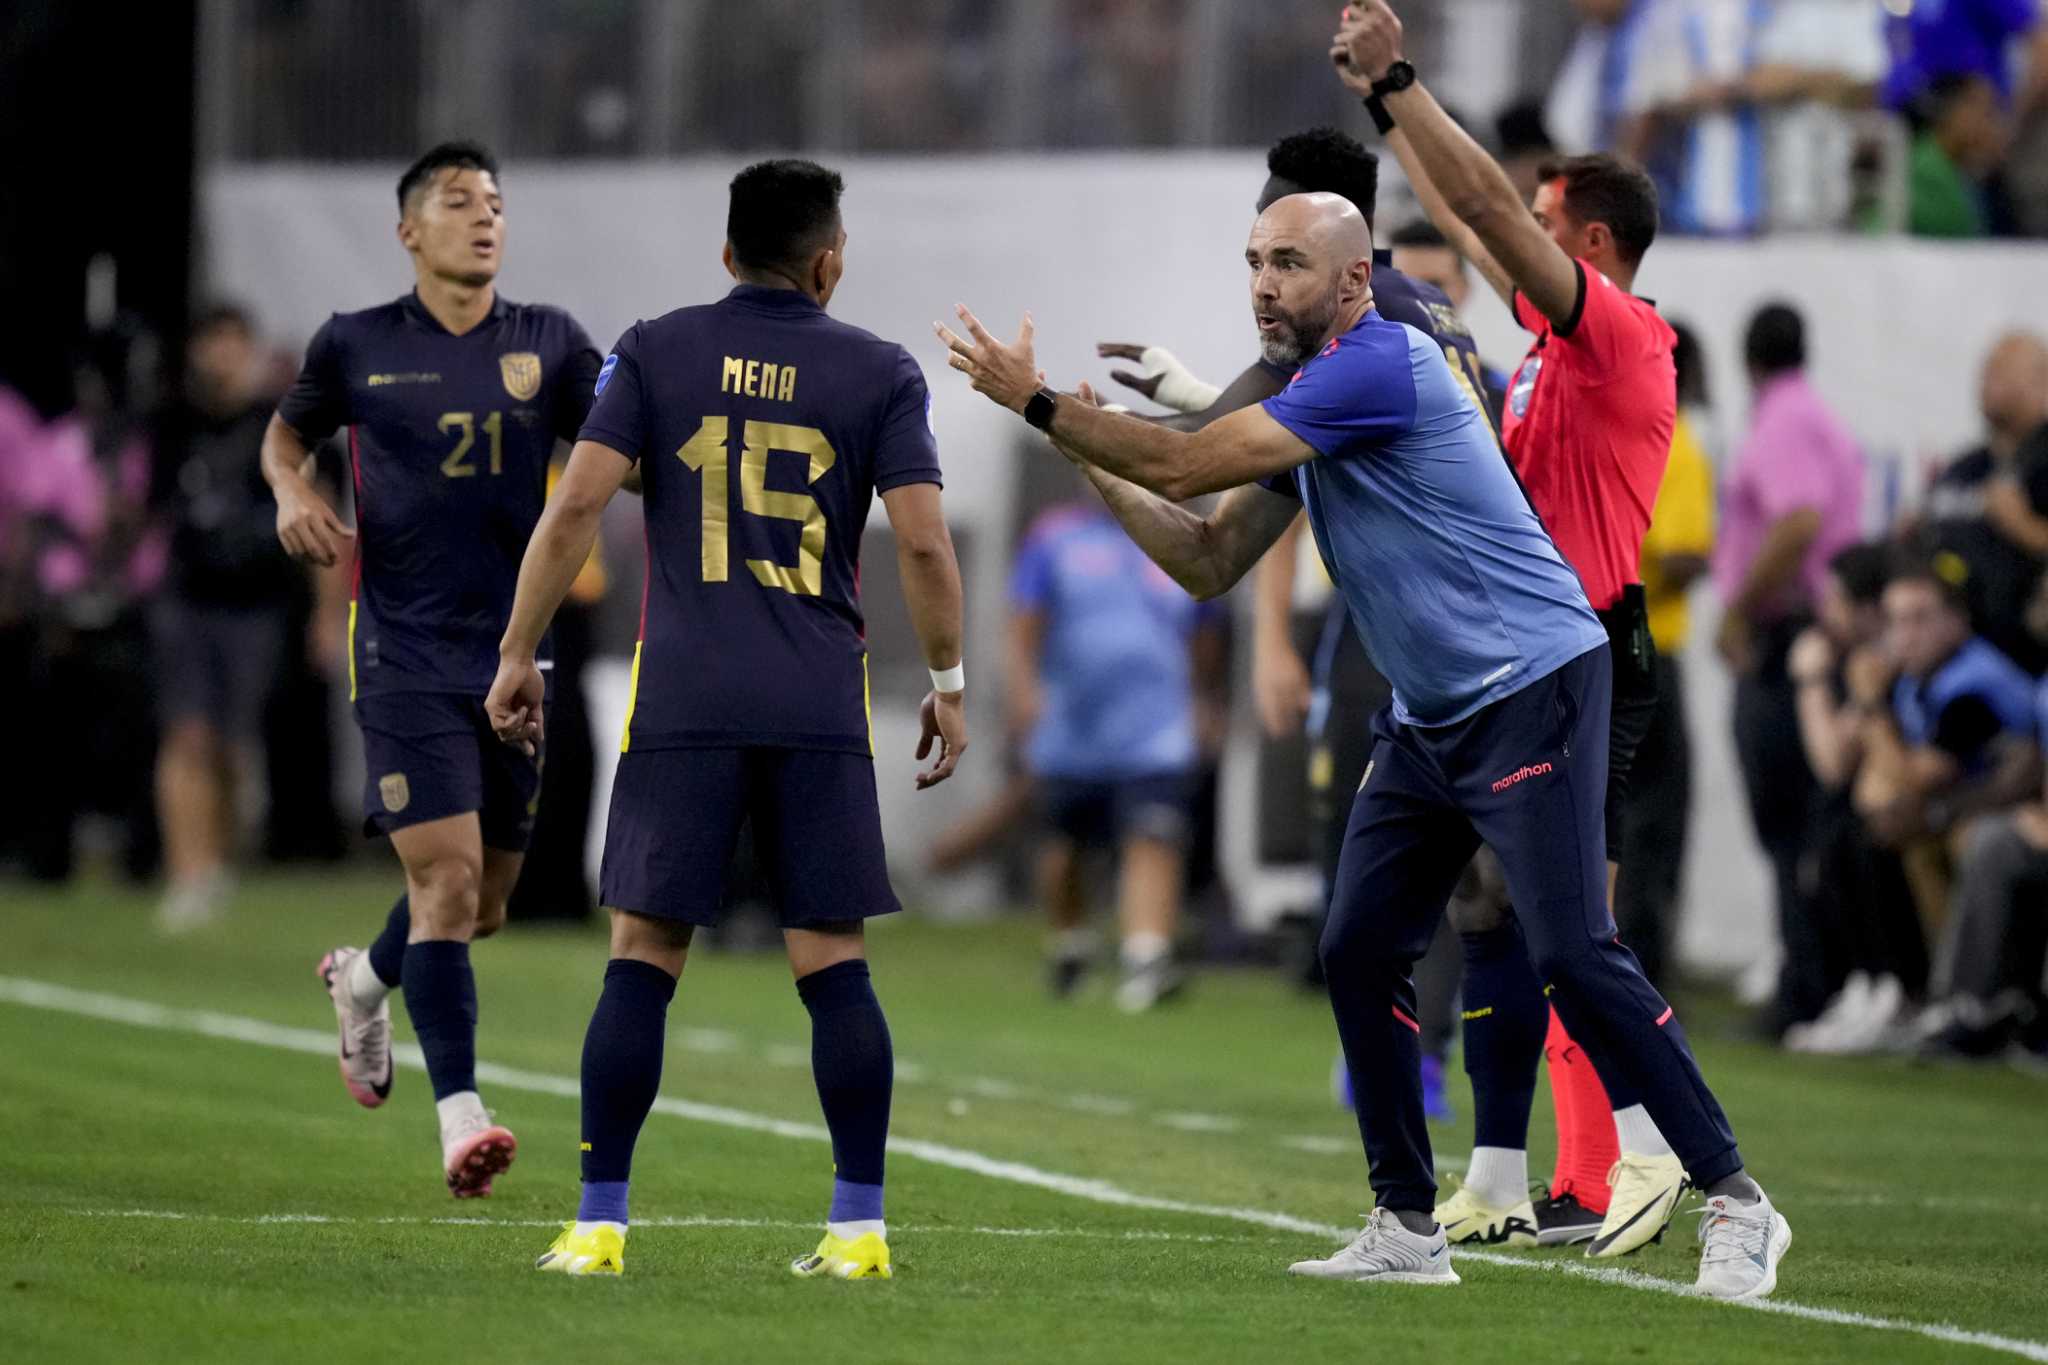 Ecuador and coach Sánchez Bas part ways after losing Copa America quarterfinal